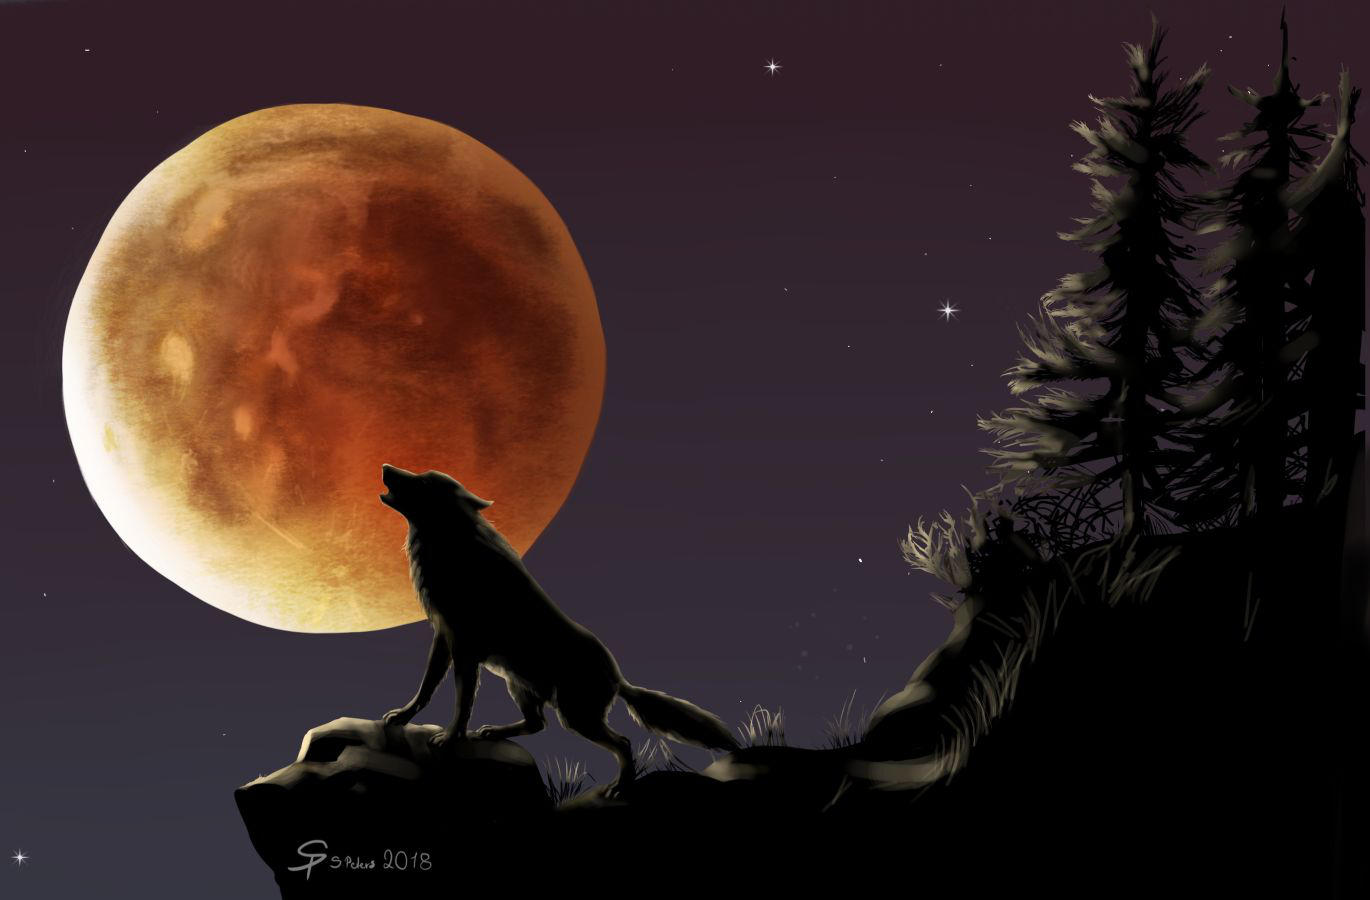 Волк воет на луну рисунок для детей